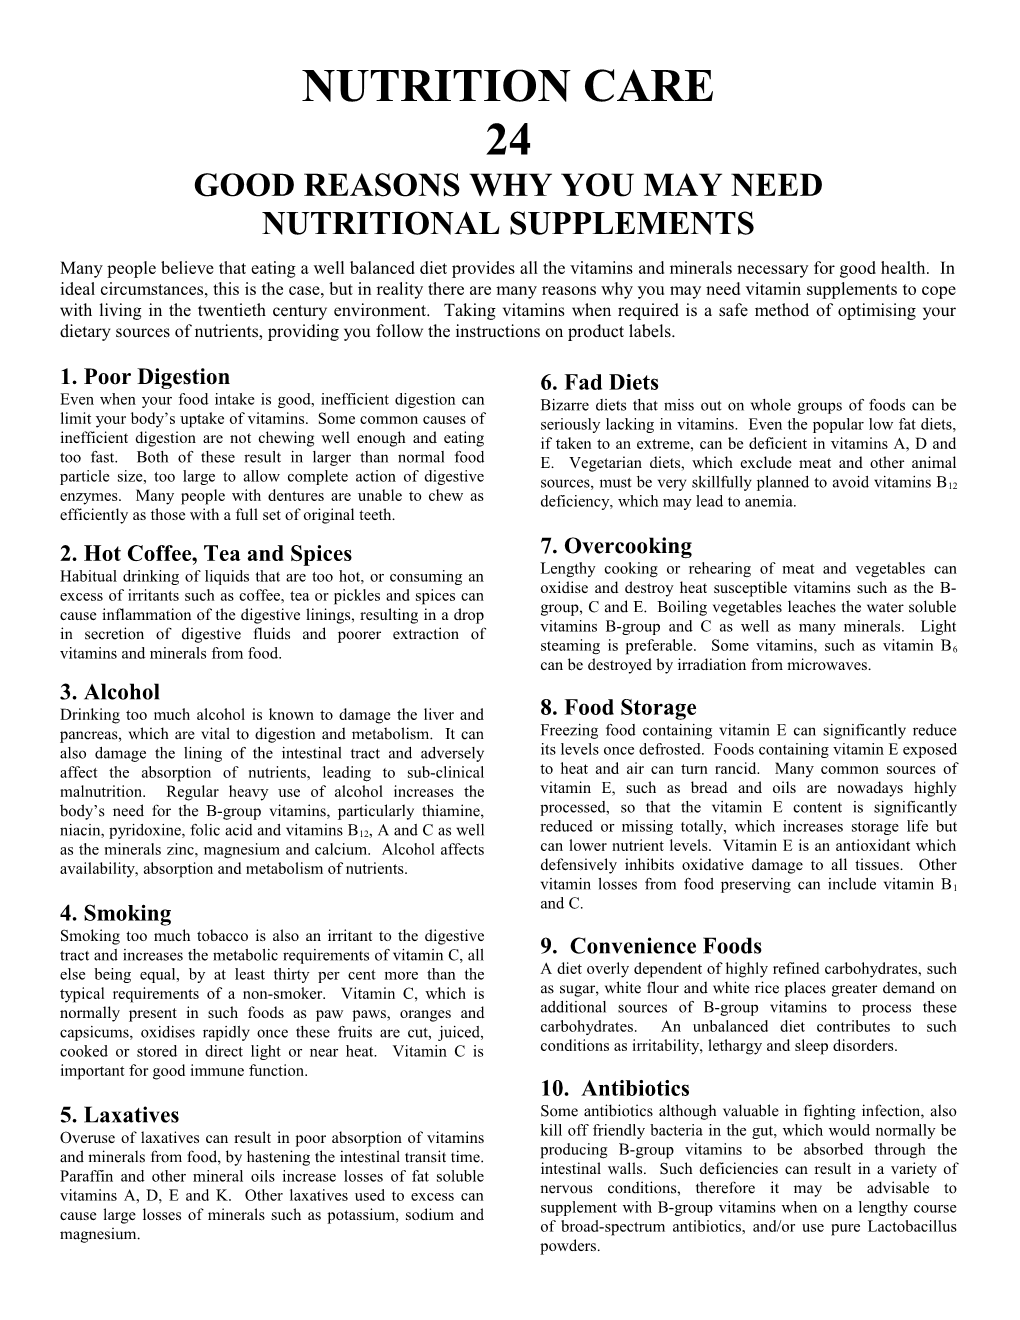 Good Reasons Why You May Need